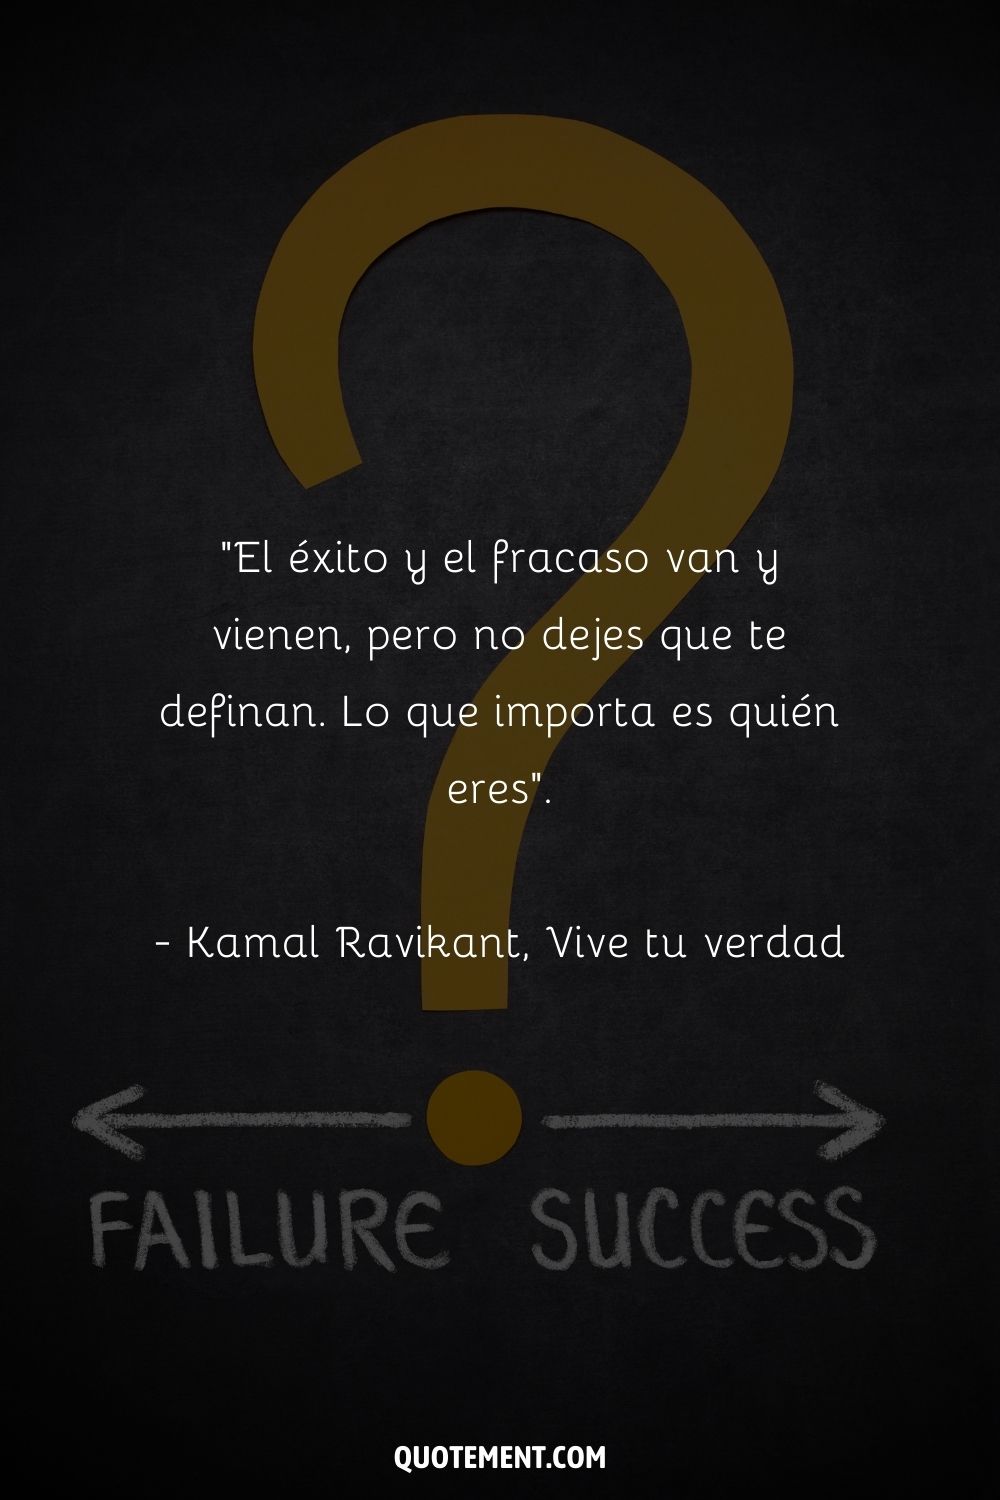 "El éxito y el fracaso van y vienen, pero no dejes que te definan. Lo que importa es quién eres". - Kamal Ravikant, Vive tu verdad